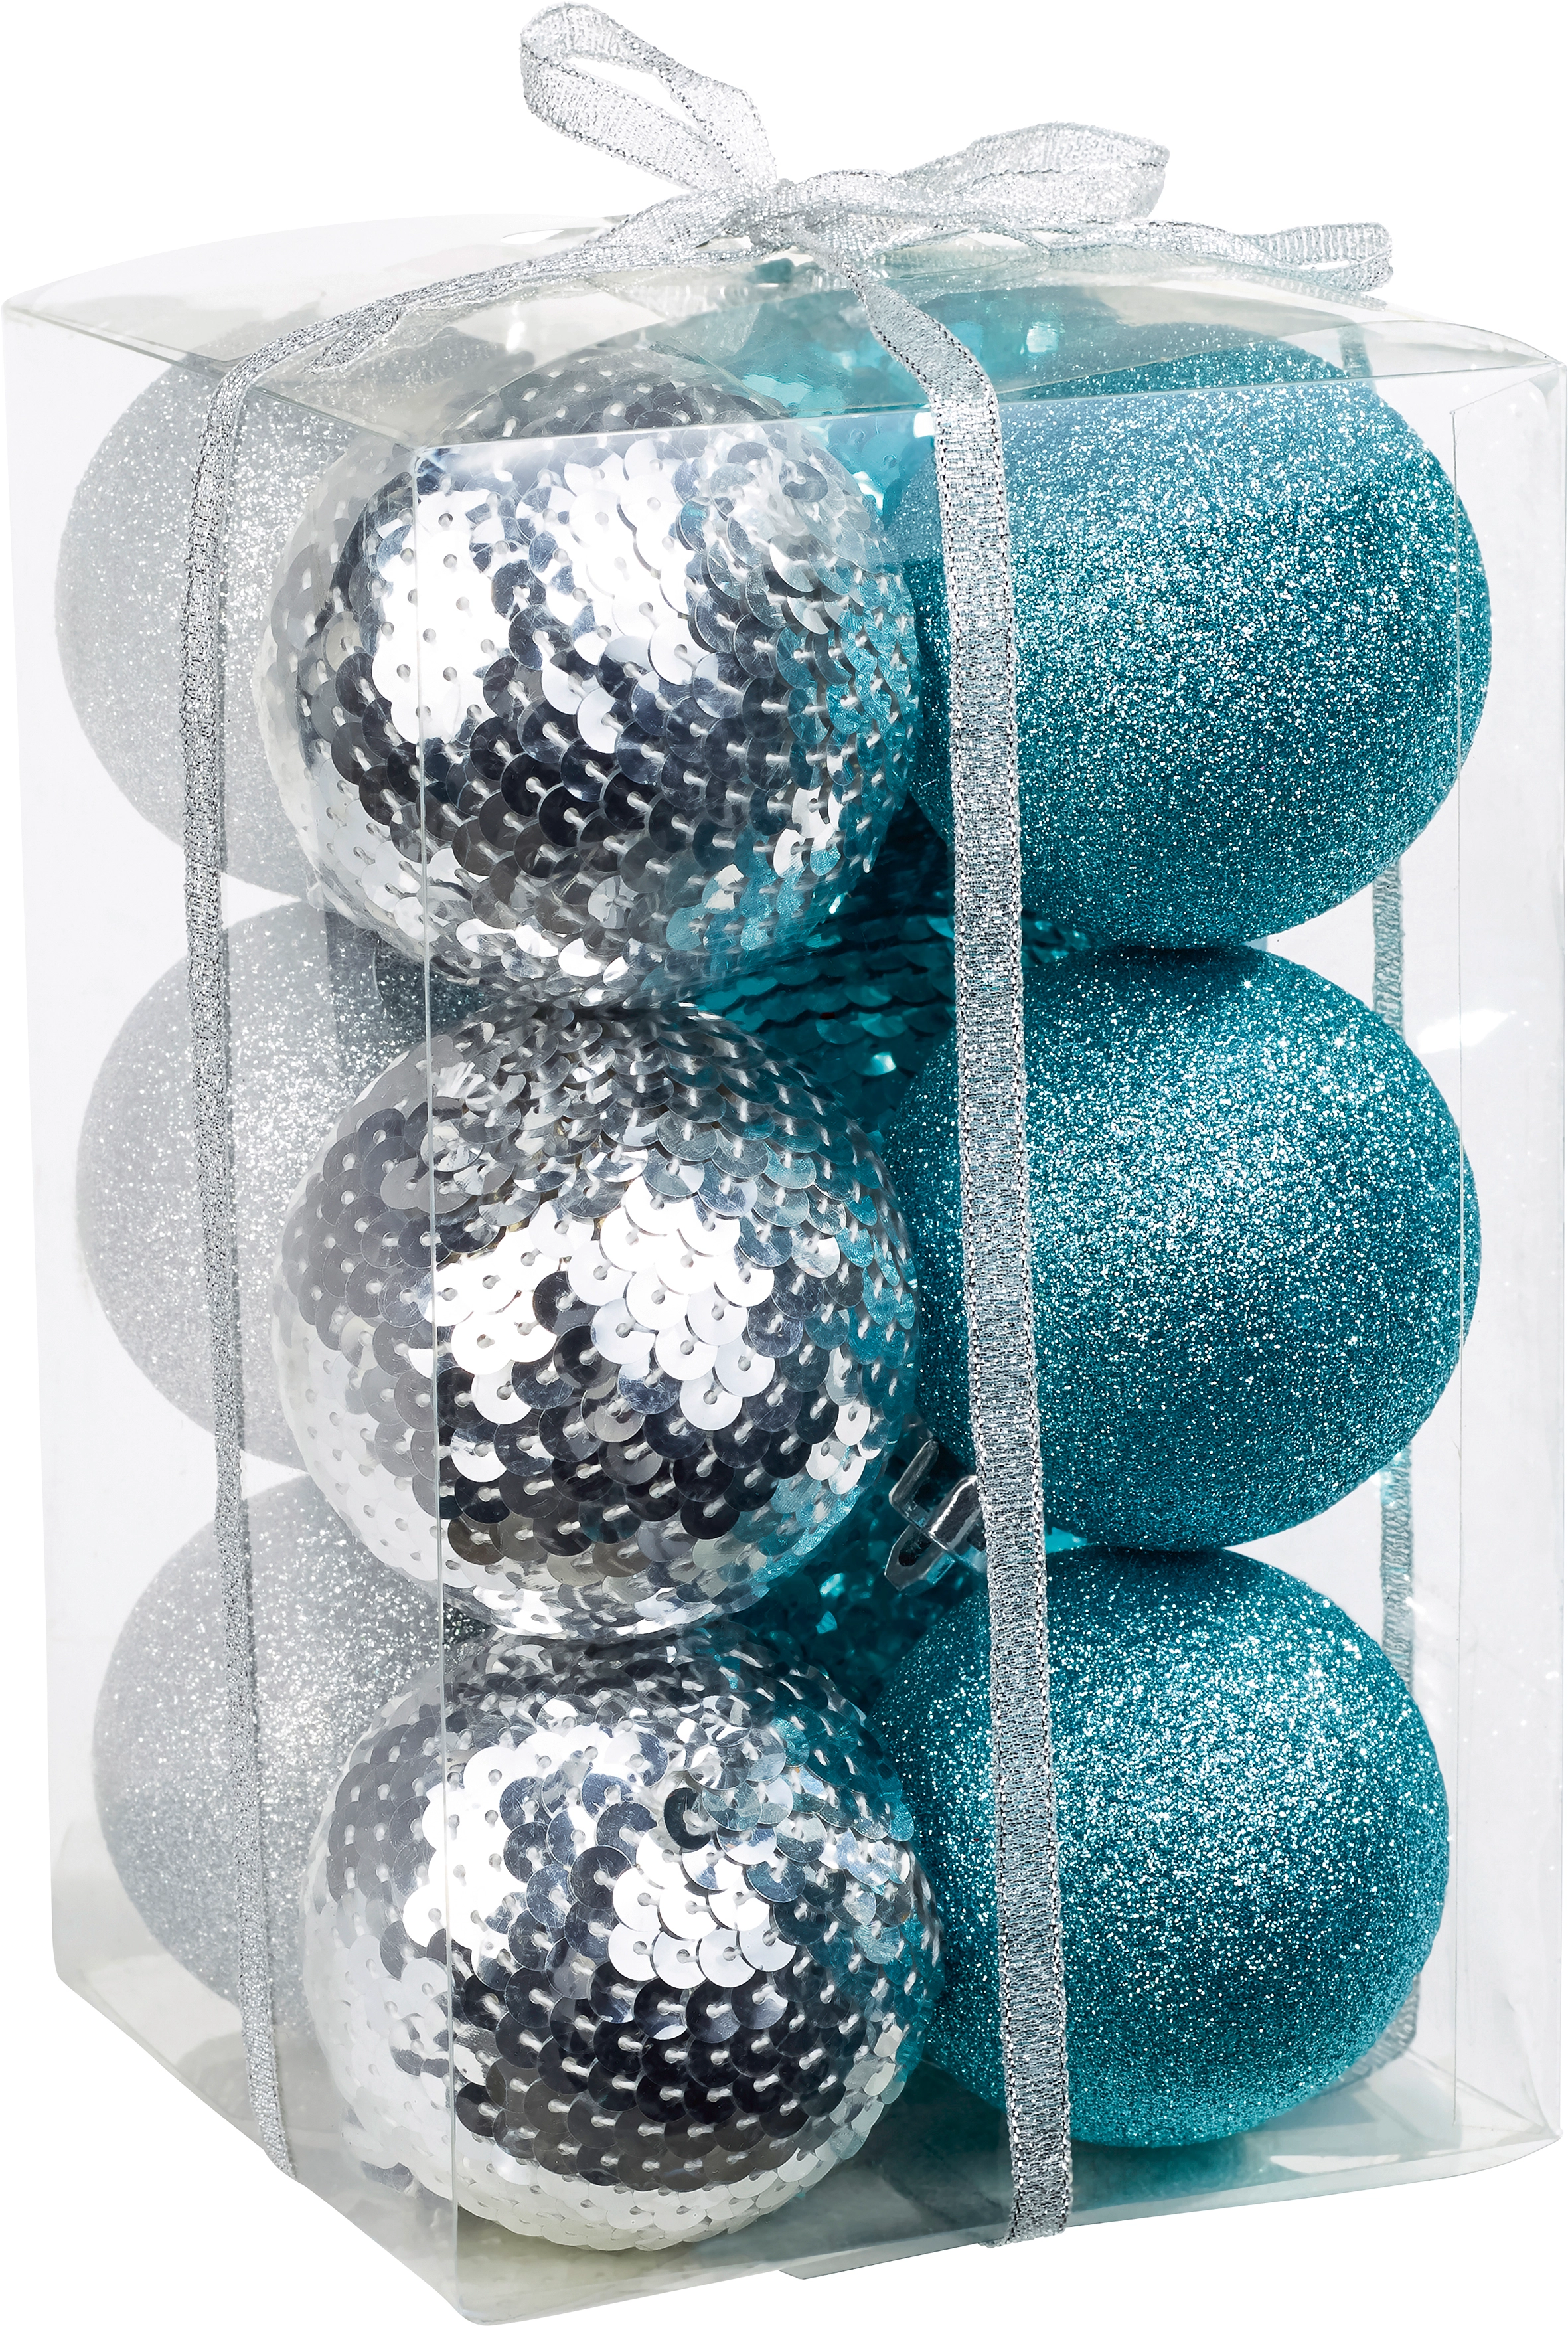 Coole blau-weiße deko-weihnachtskugeln mit glitzer- und silberelementen